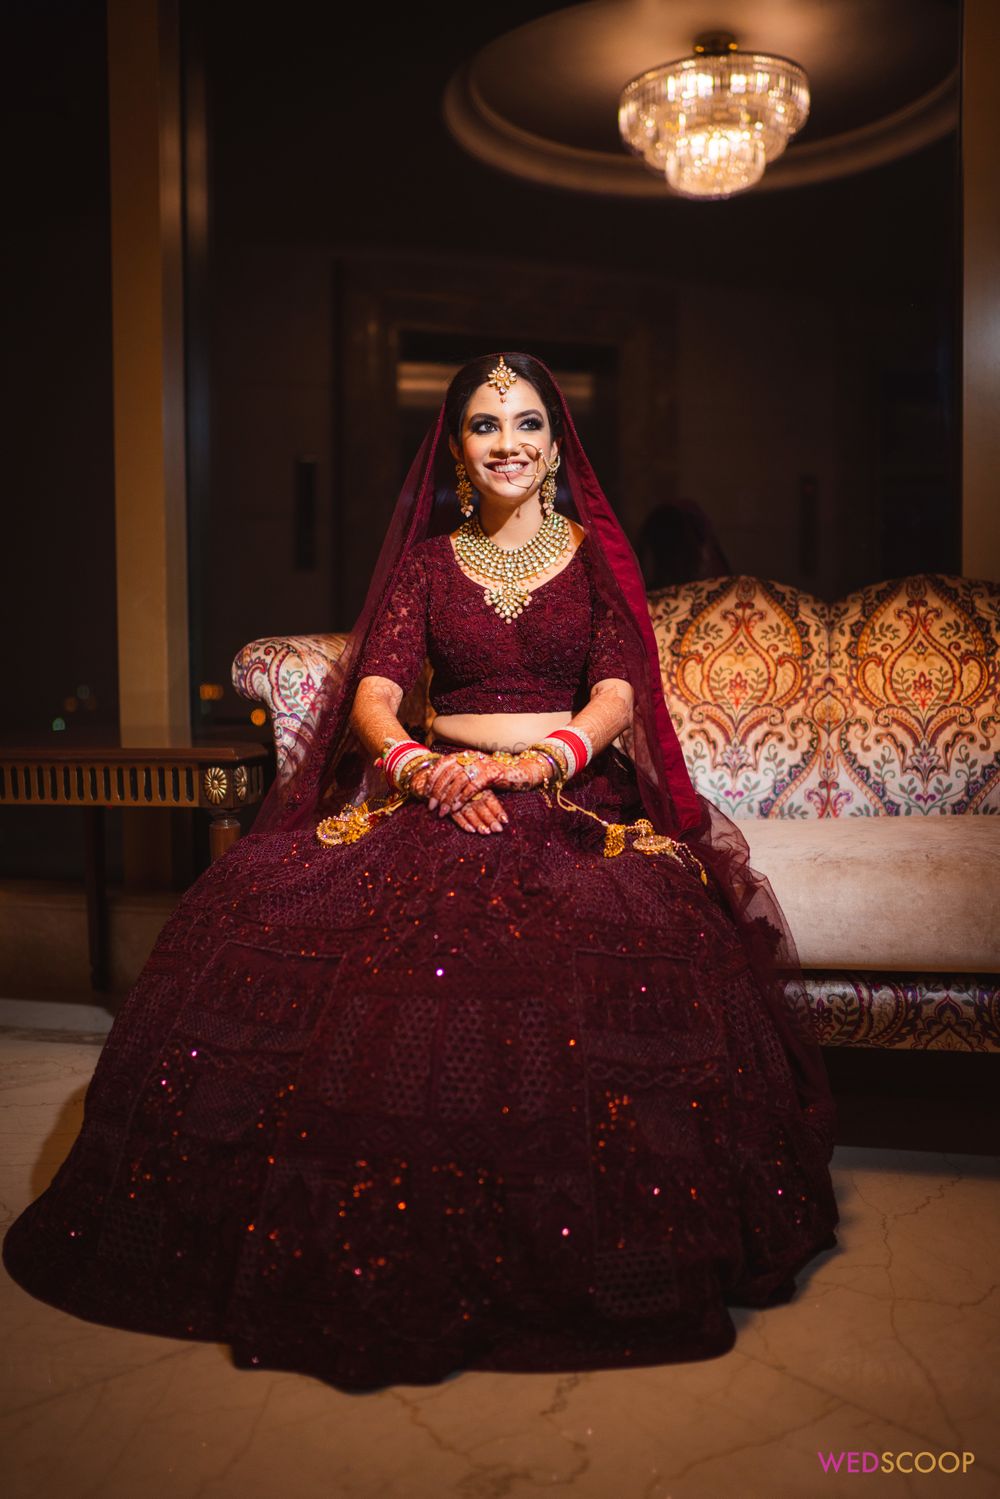 Photo of Bride dressed in a deep maroon bridal lehenga.